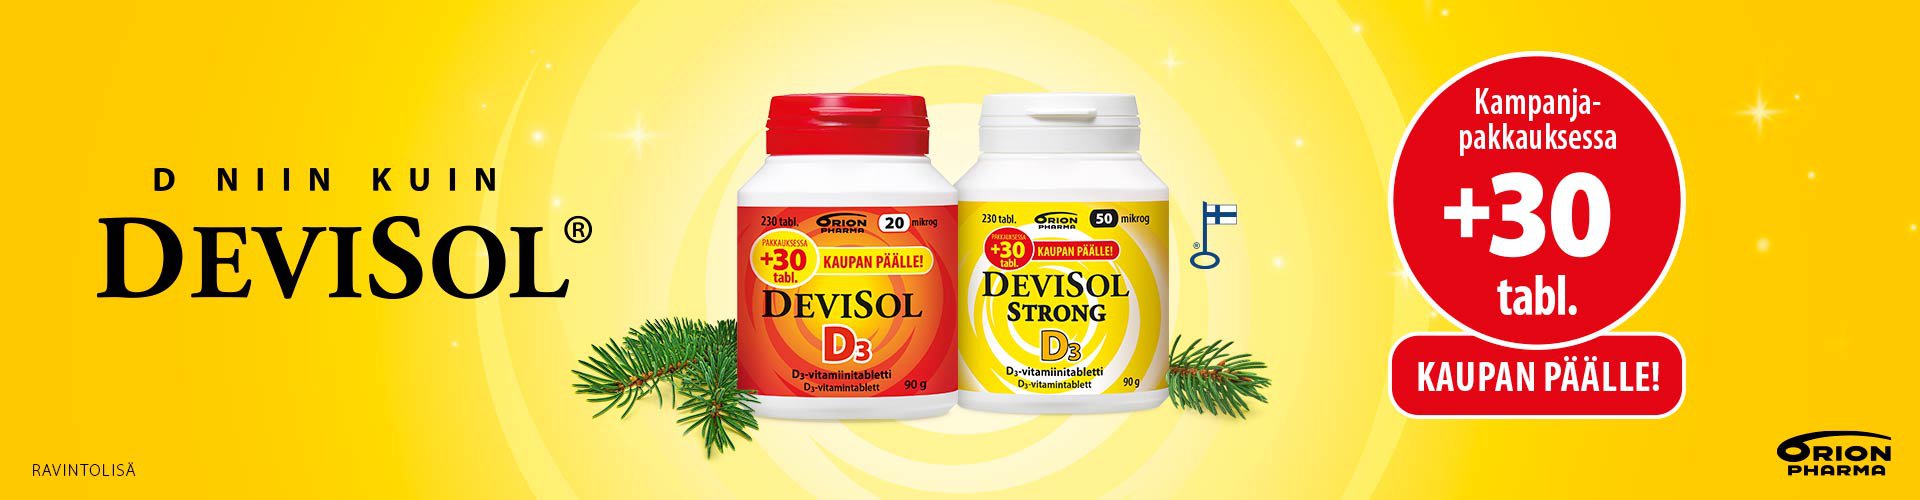 DeviSol valmisteet sisältävät hyvin imeytyvää D3-vitamiinia, joka vahvistaa vastustuskykyä. Suosittele asiakkaillesi DeviSol-valmistetta päivittäisen D-vitamiinin saannin turvaamiseksi ympäri vuoden. DeviSol Strong -valmisteen vahva D3-vitamiinipitoisuus